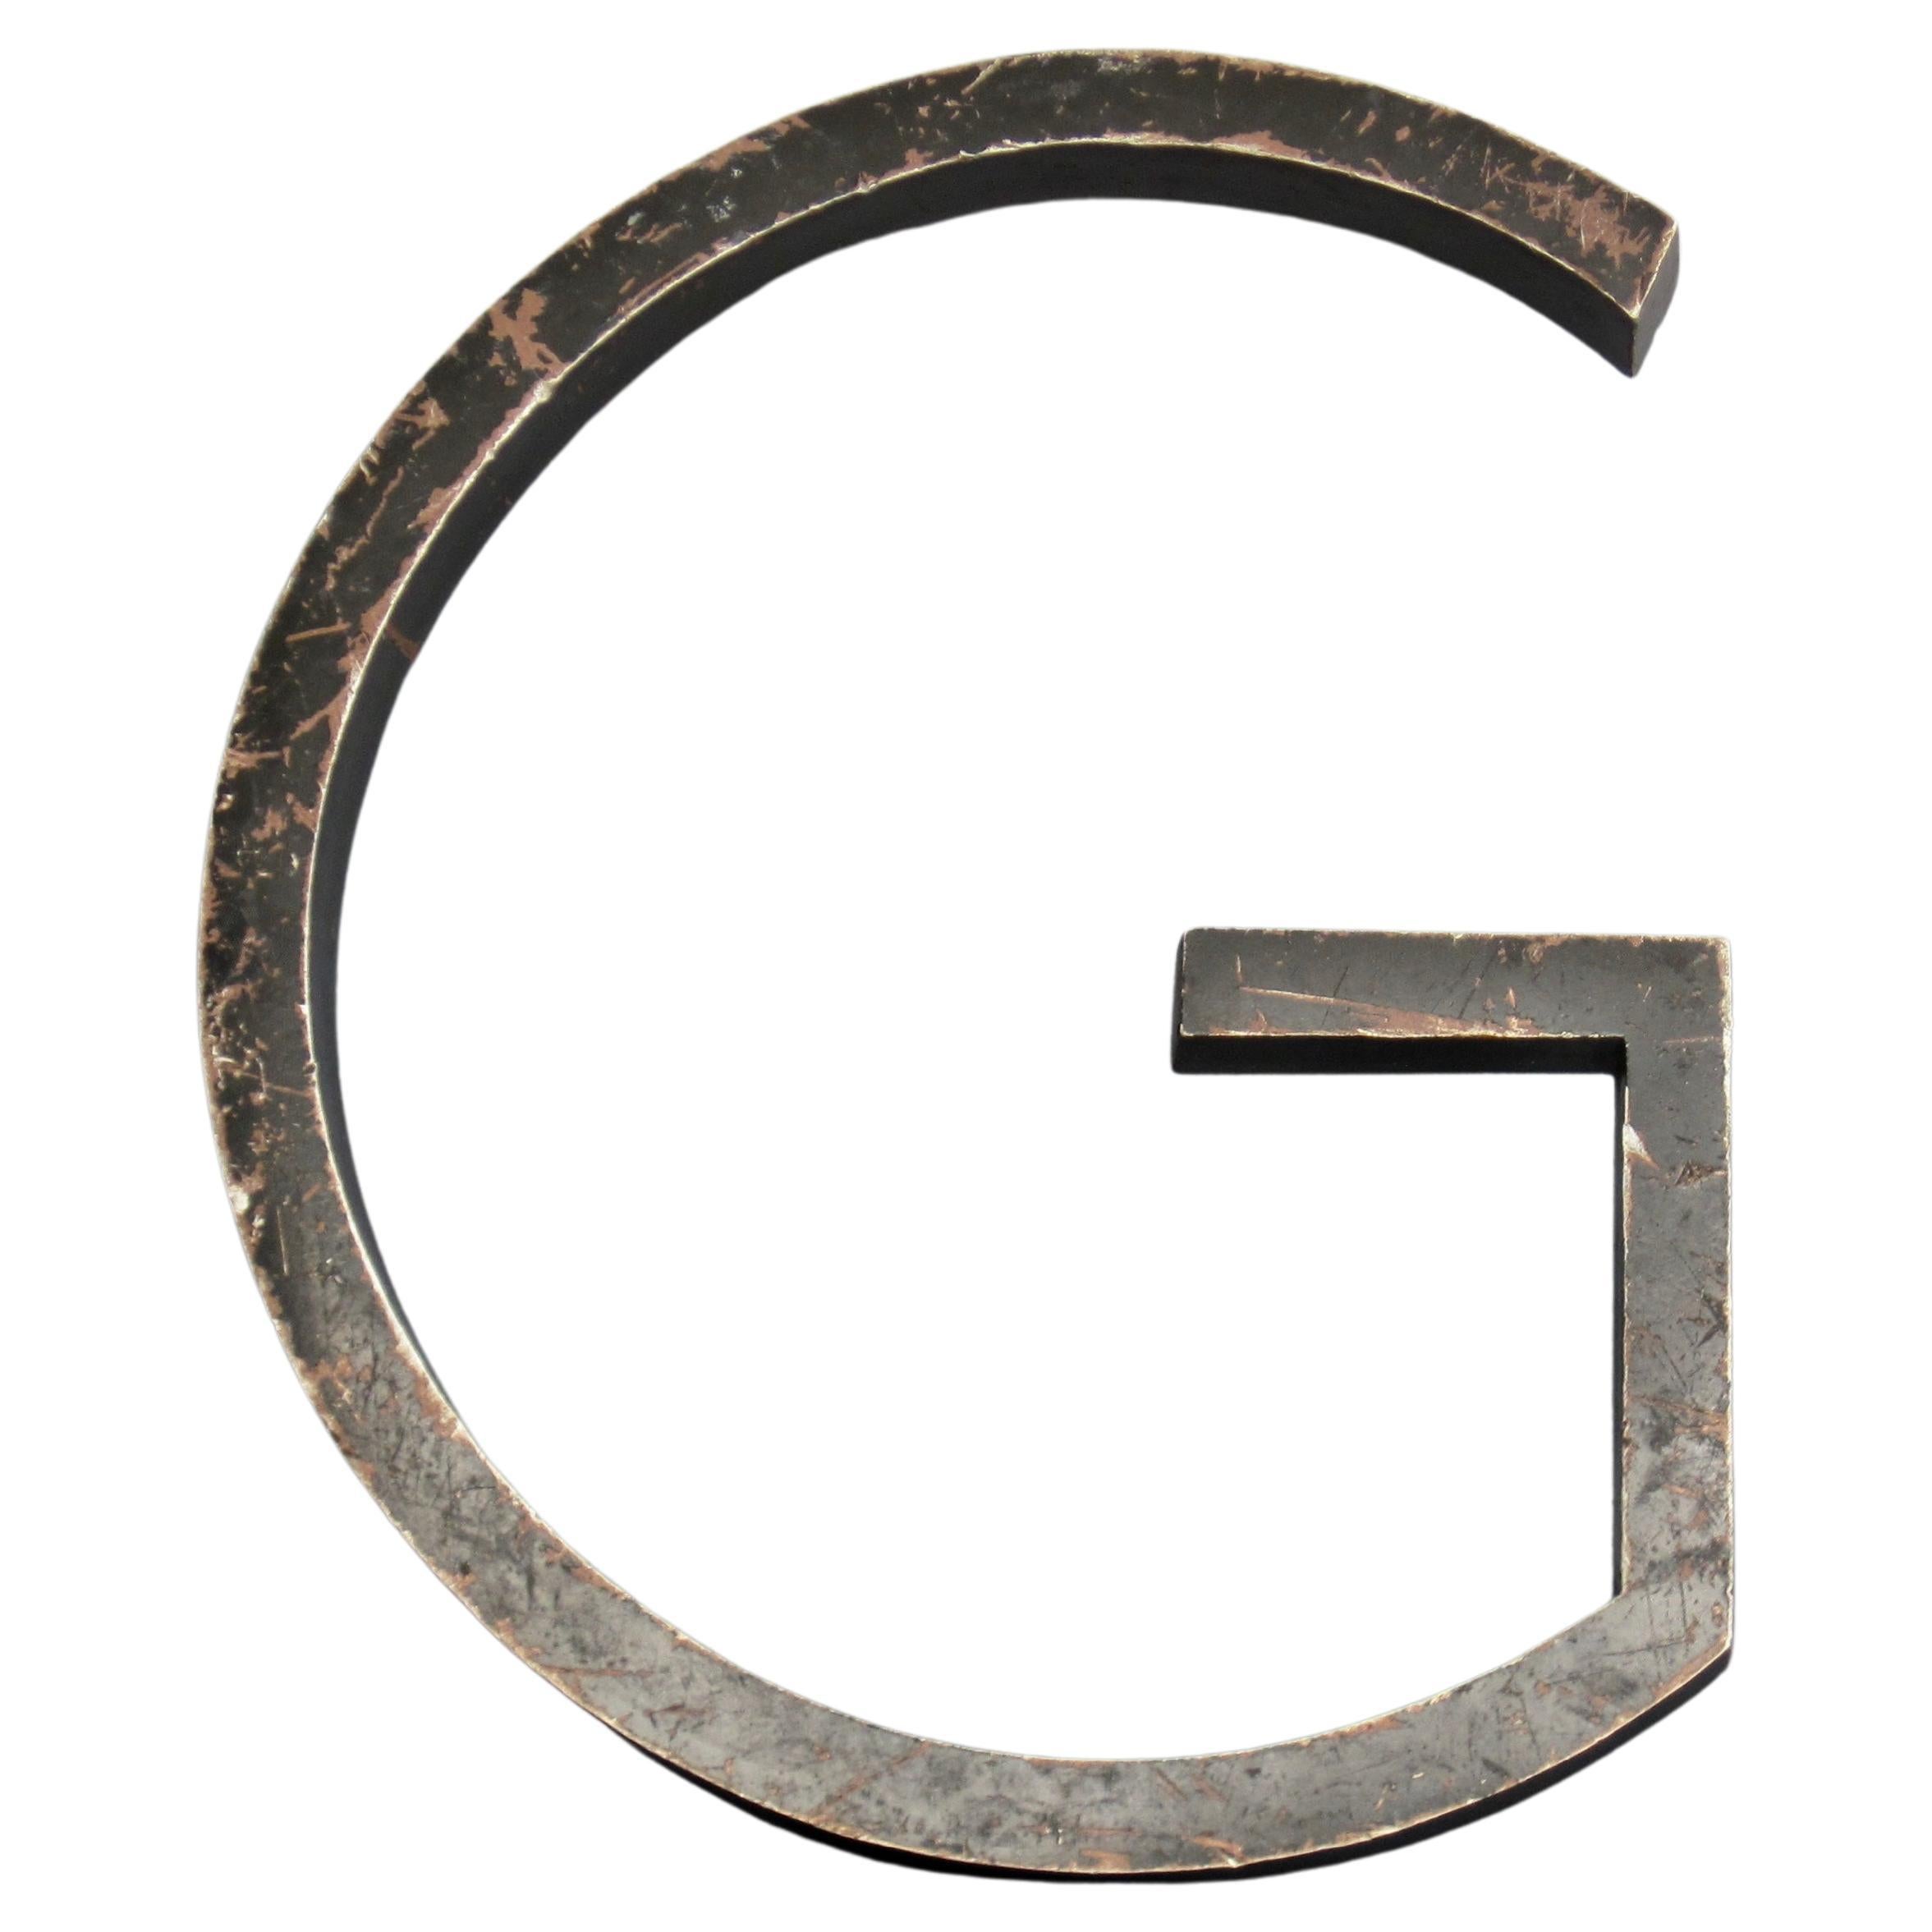 Vintage Weathered Metal Letter G Wall Emblem